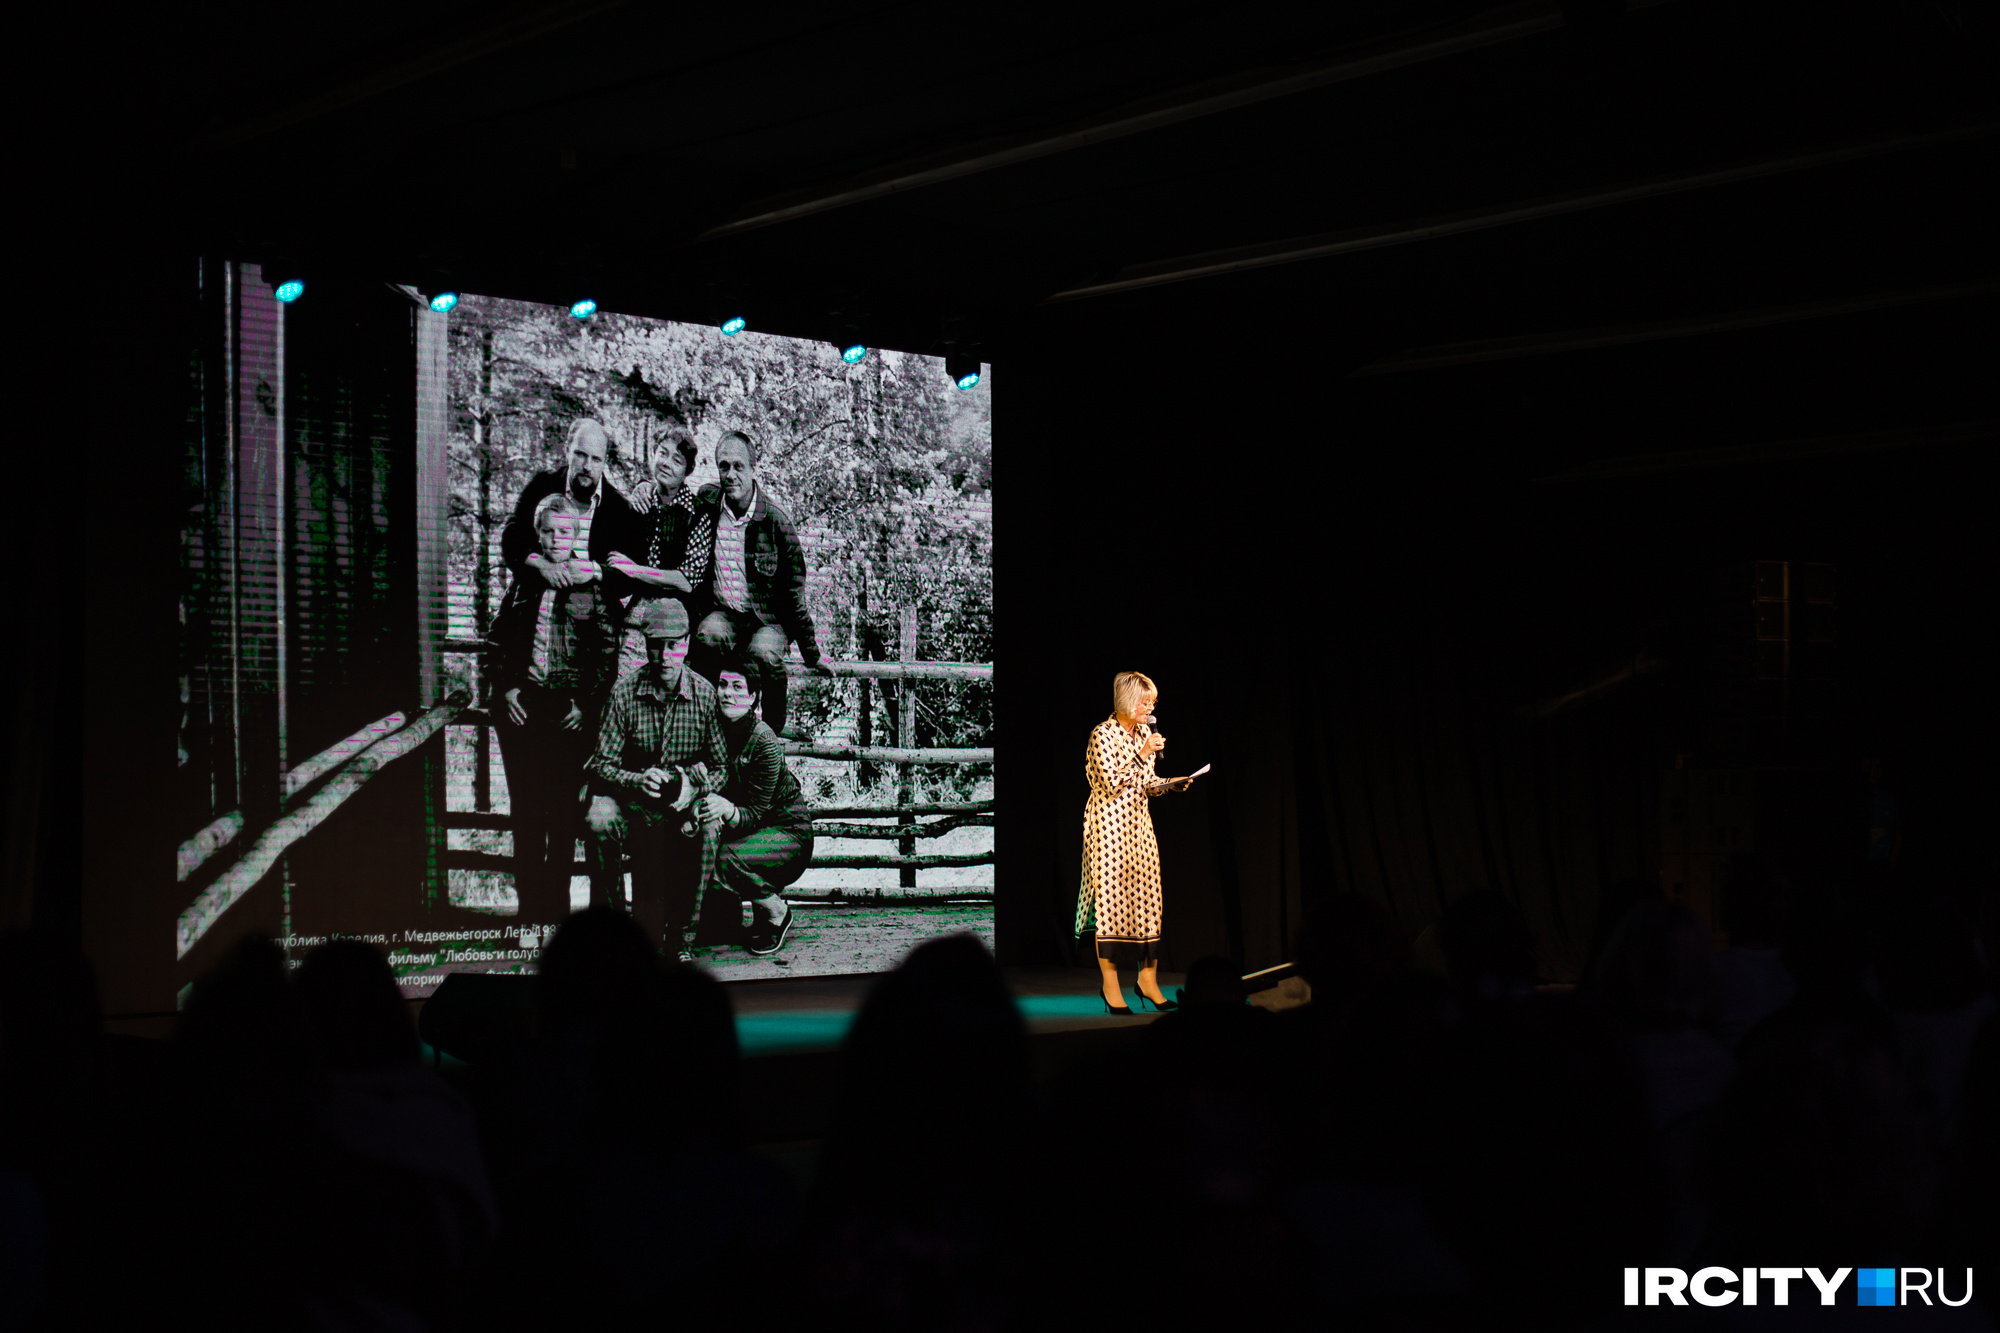 Юлия Меньшова выступает в Иркутске: на экране — фотография съемочной команды фильма «Любовь и голуби»